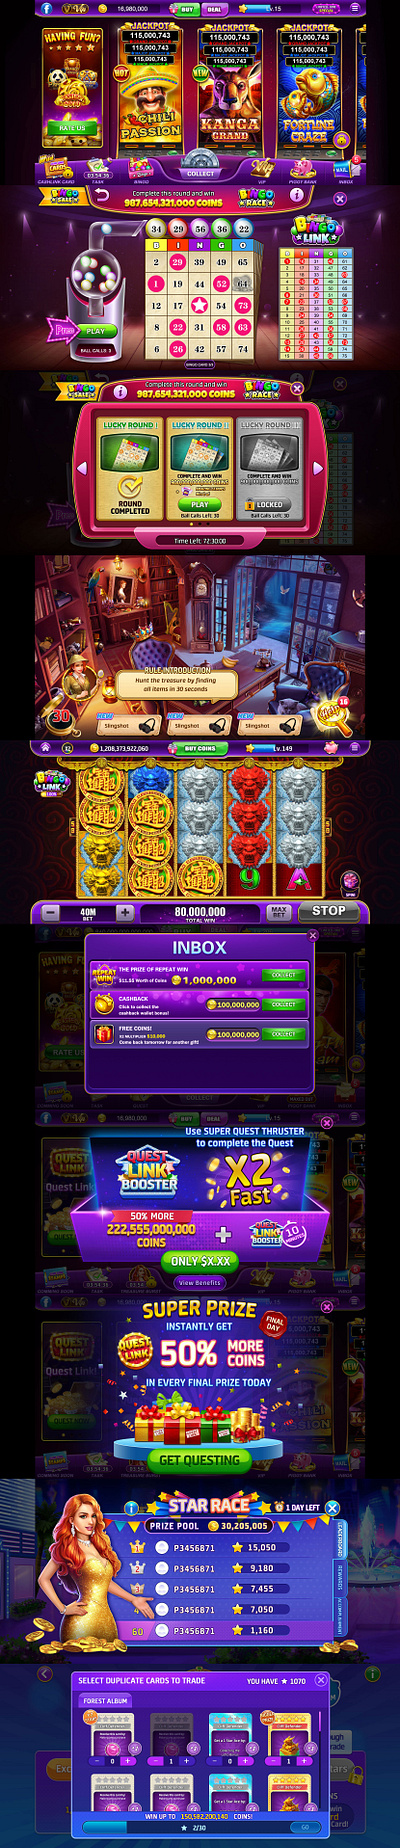 A slot game UI design